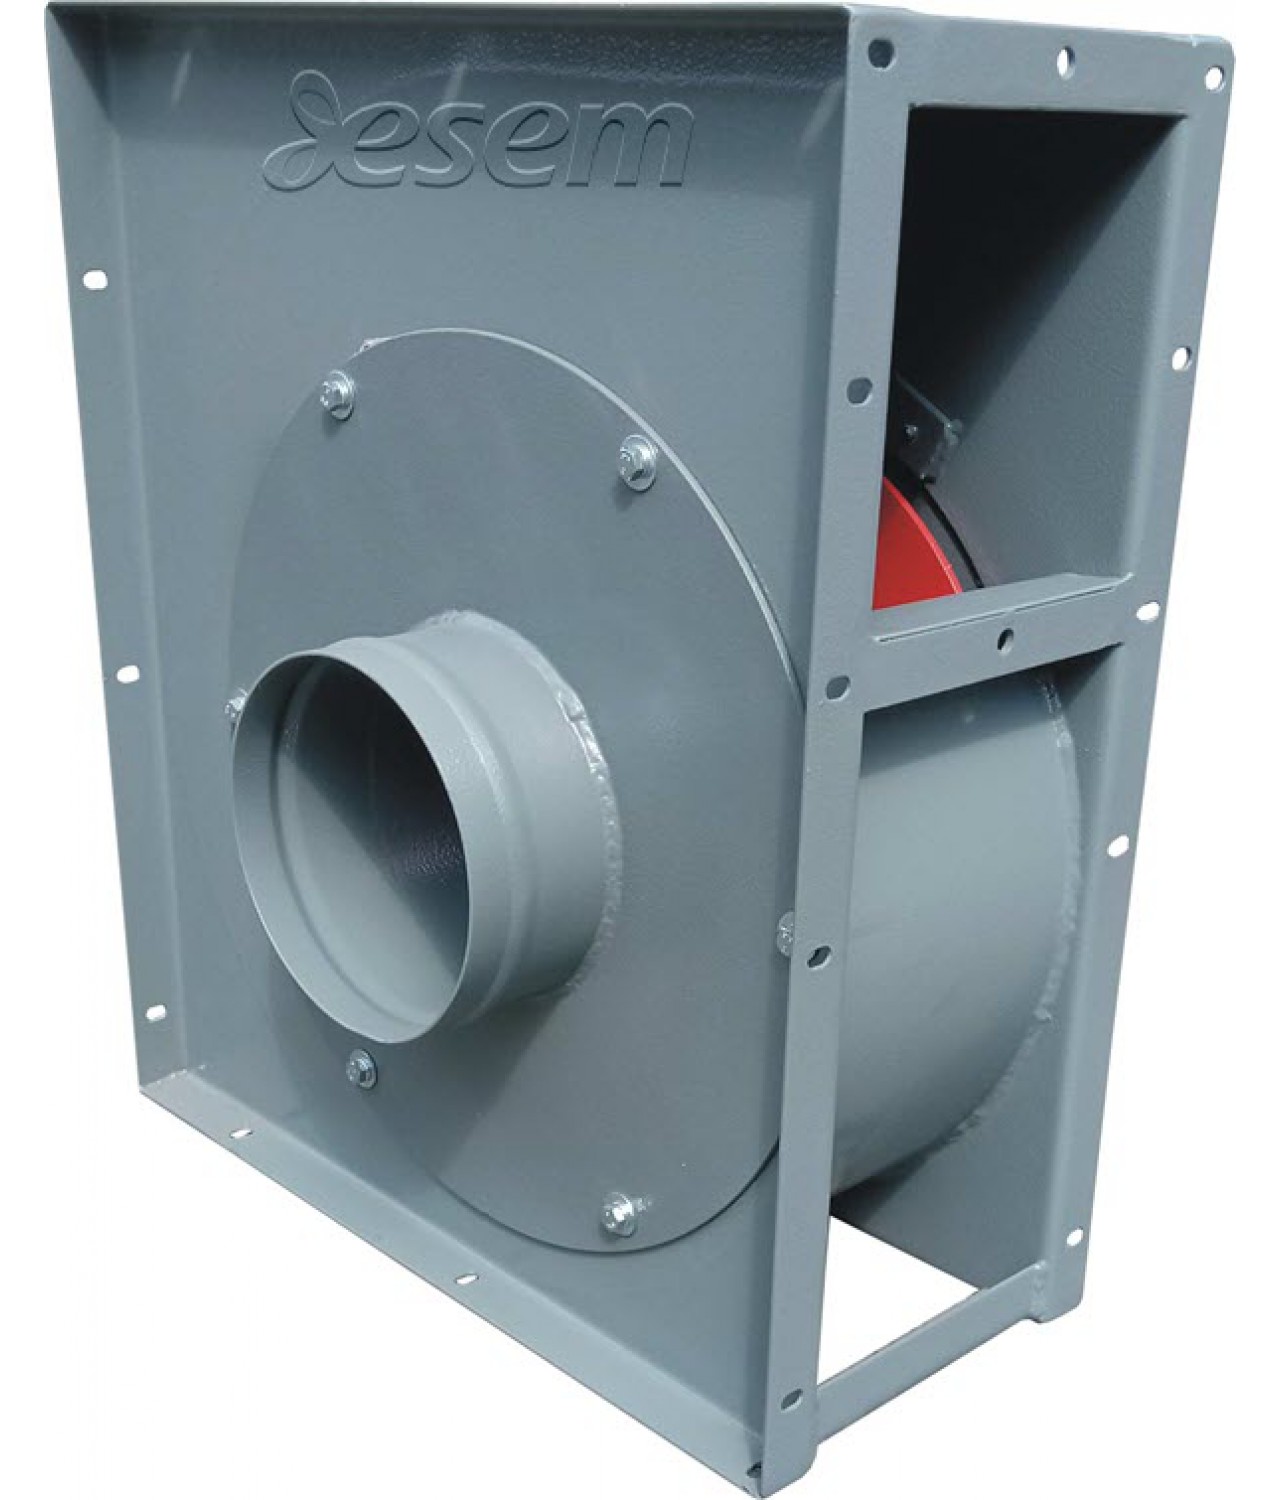 Dulkių transportavimo ventiliatoriai IVWTP ≤4500 m³/h